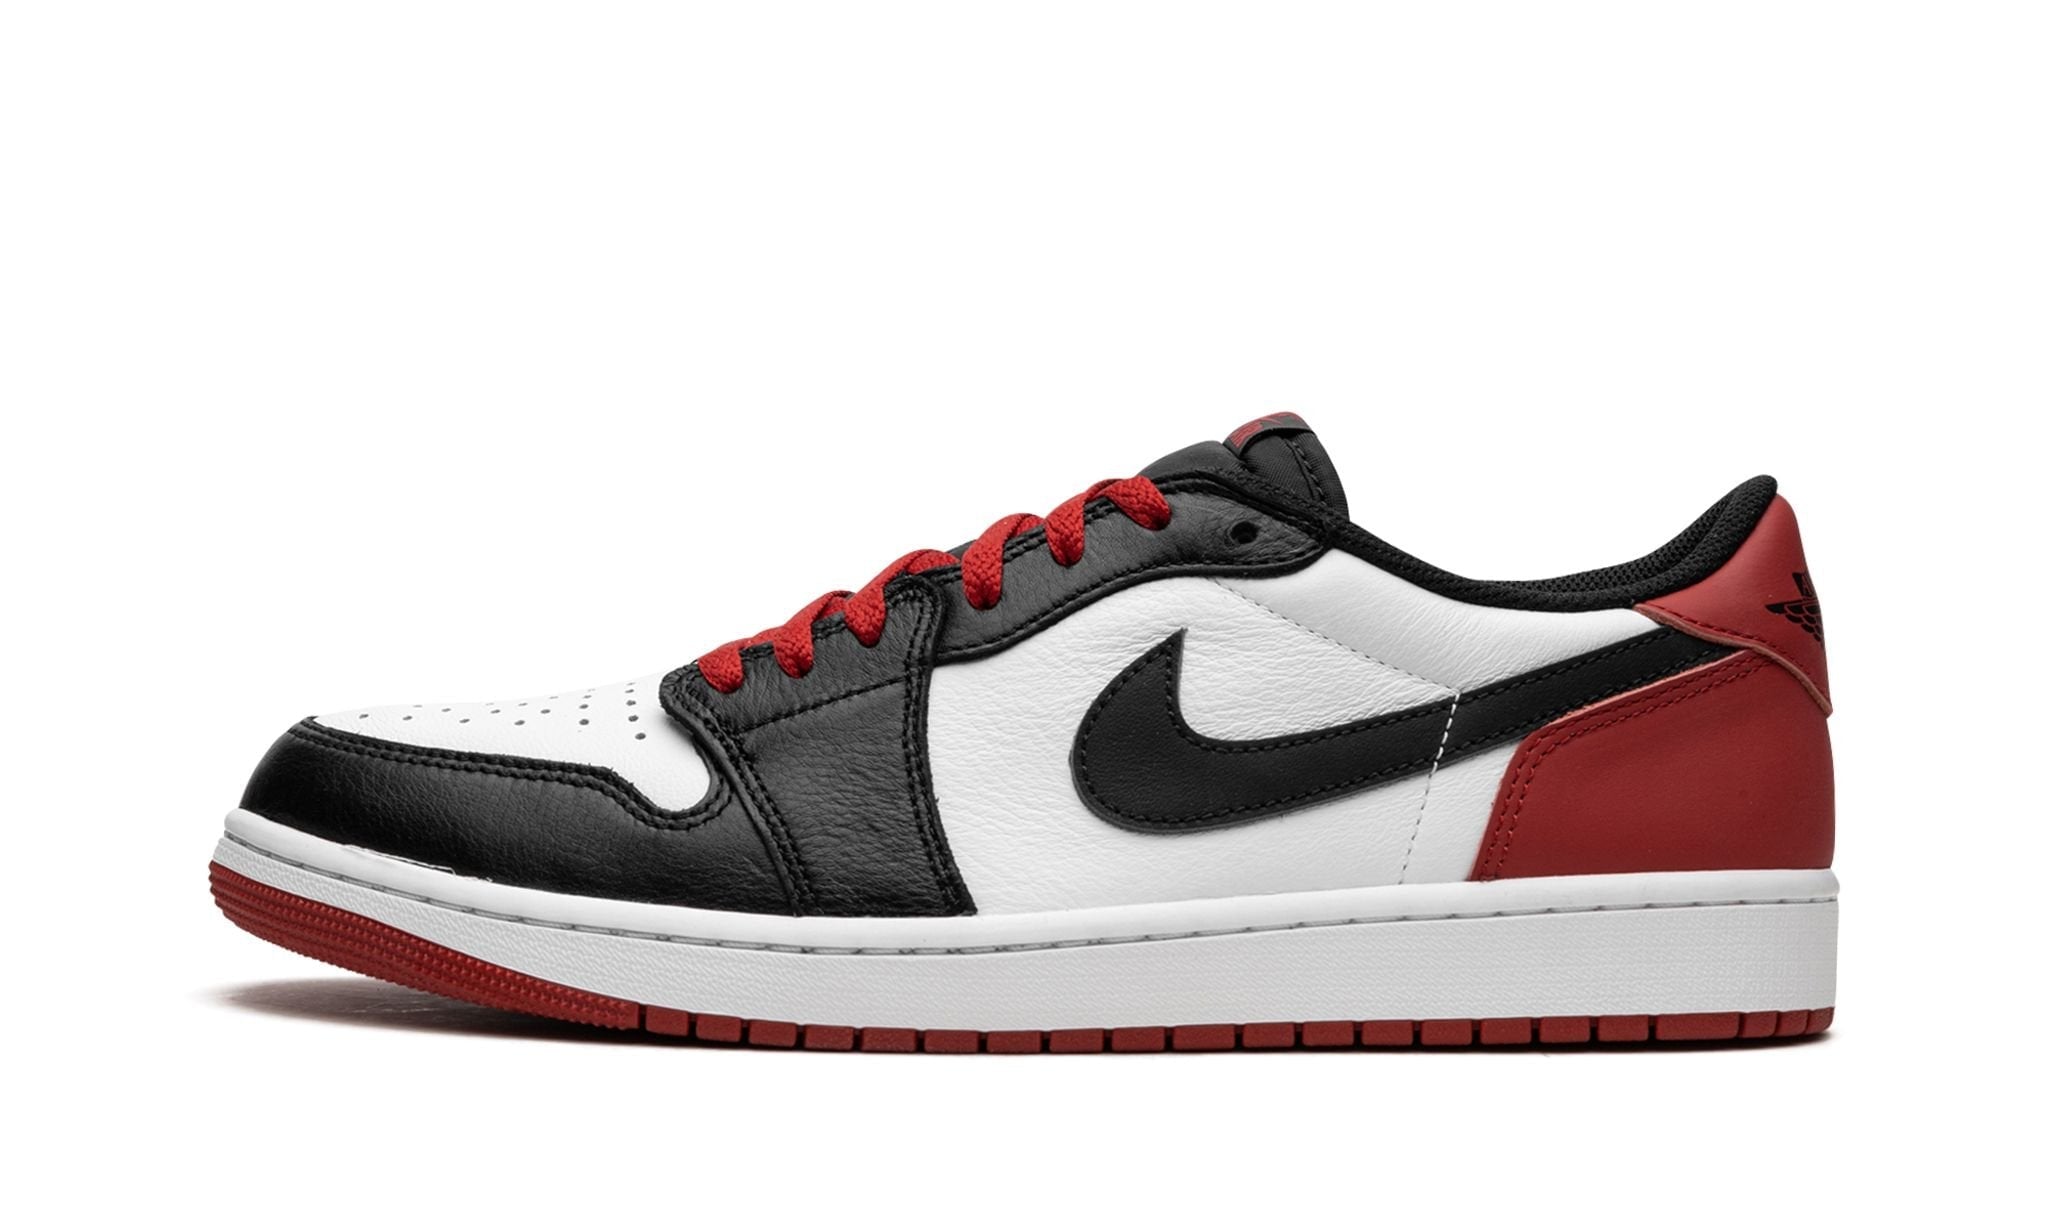 Air Jordan 1 Low OG Black Toe - Addict Sneakers